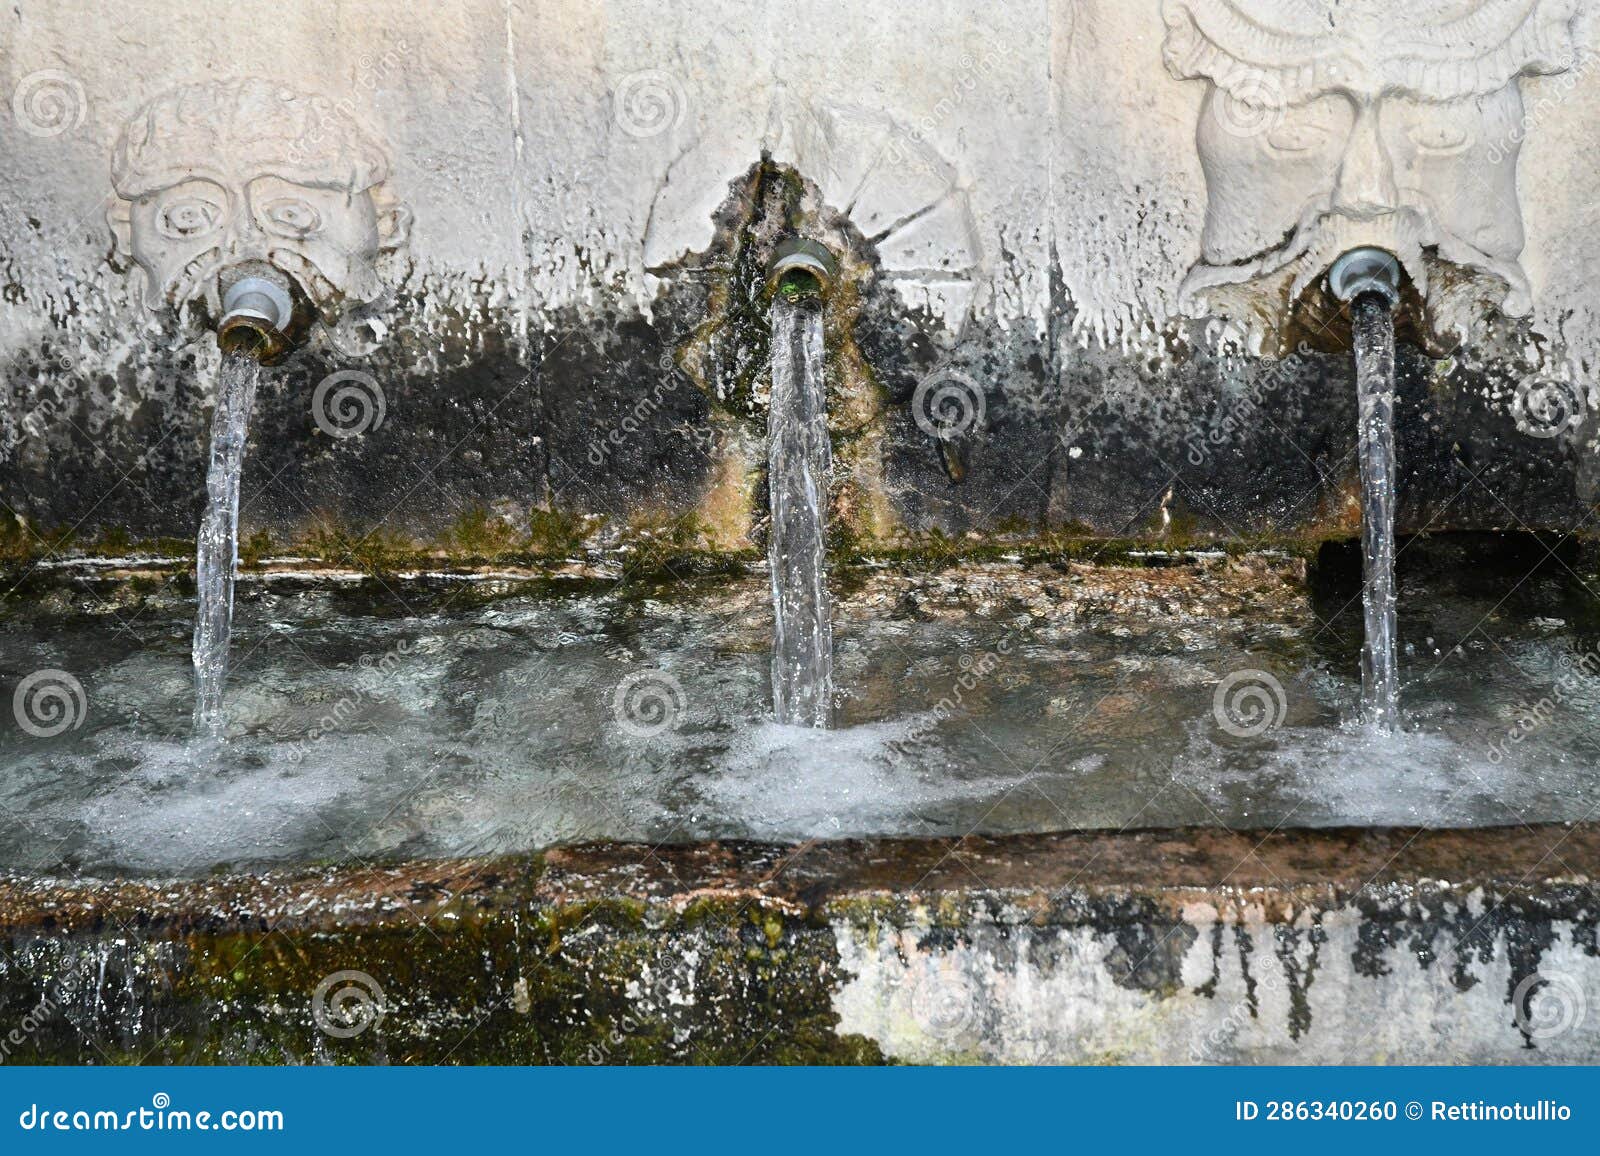 capodacqua spring and fountain. st. wolf. benevento